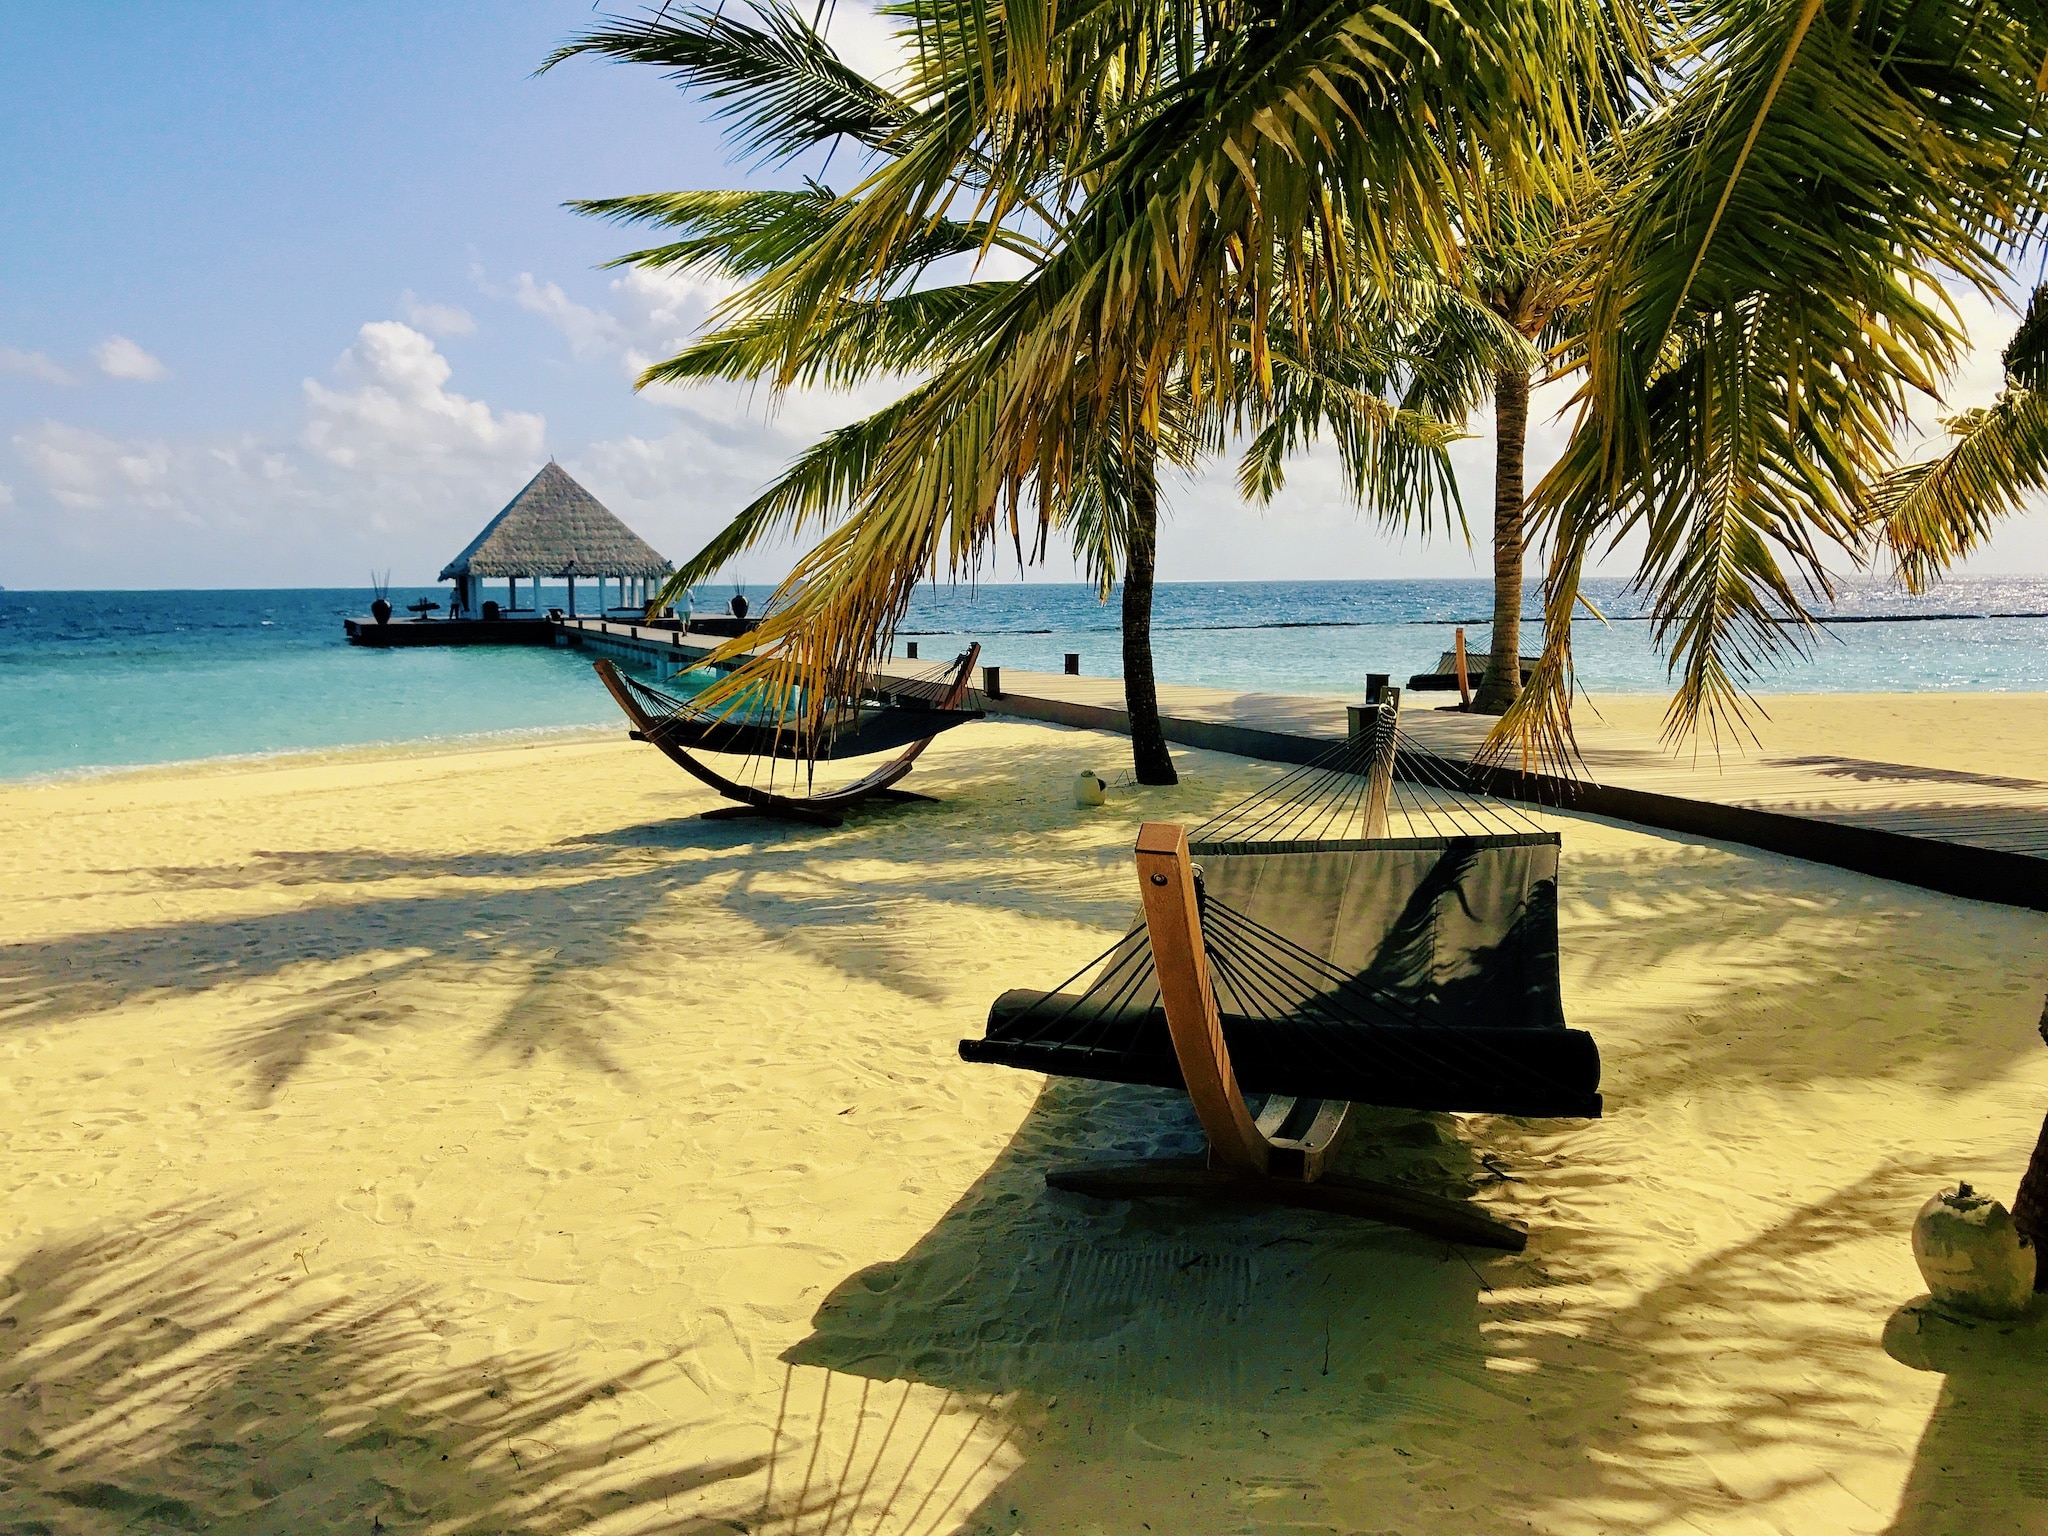 Malediven-Urlaub günstig buchen – Tipps & Erfahrungen für das Inselparadies